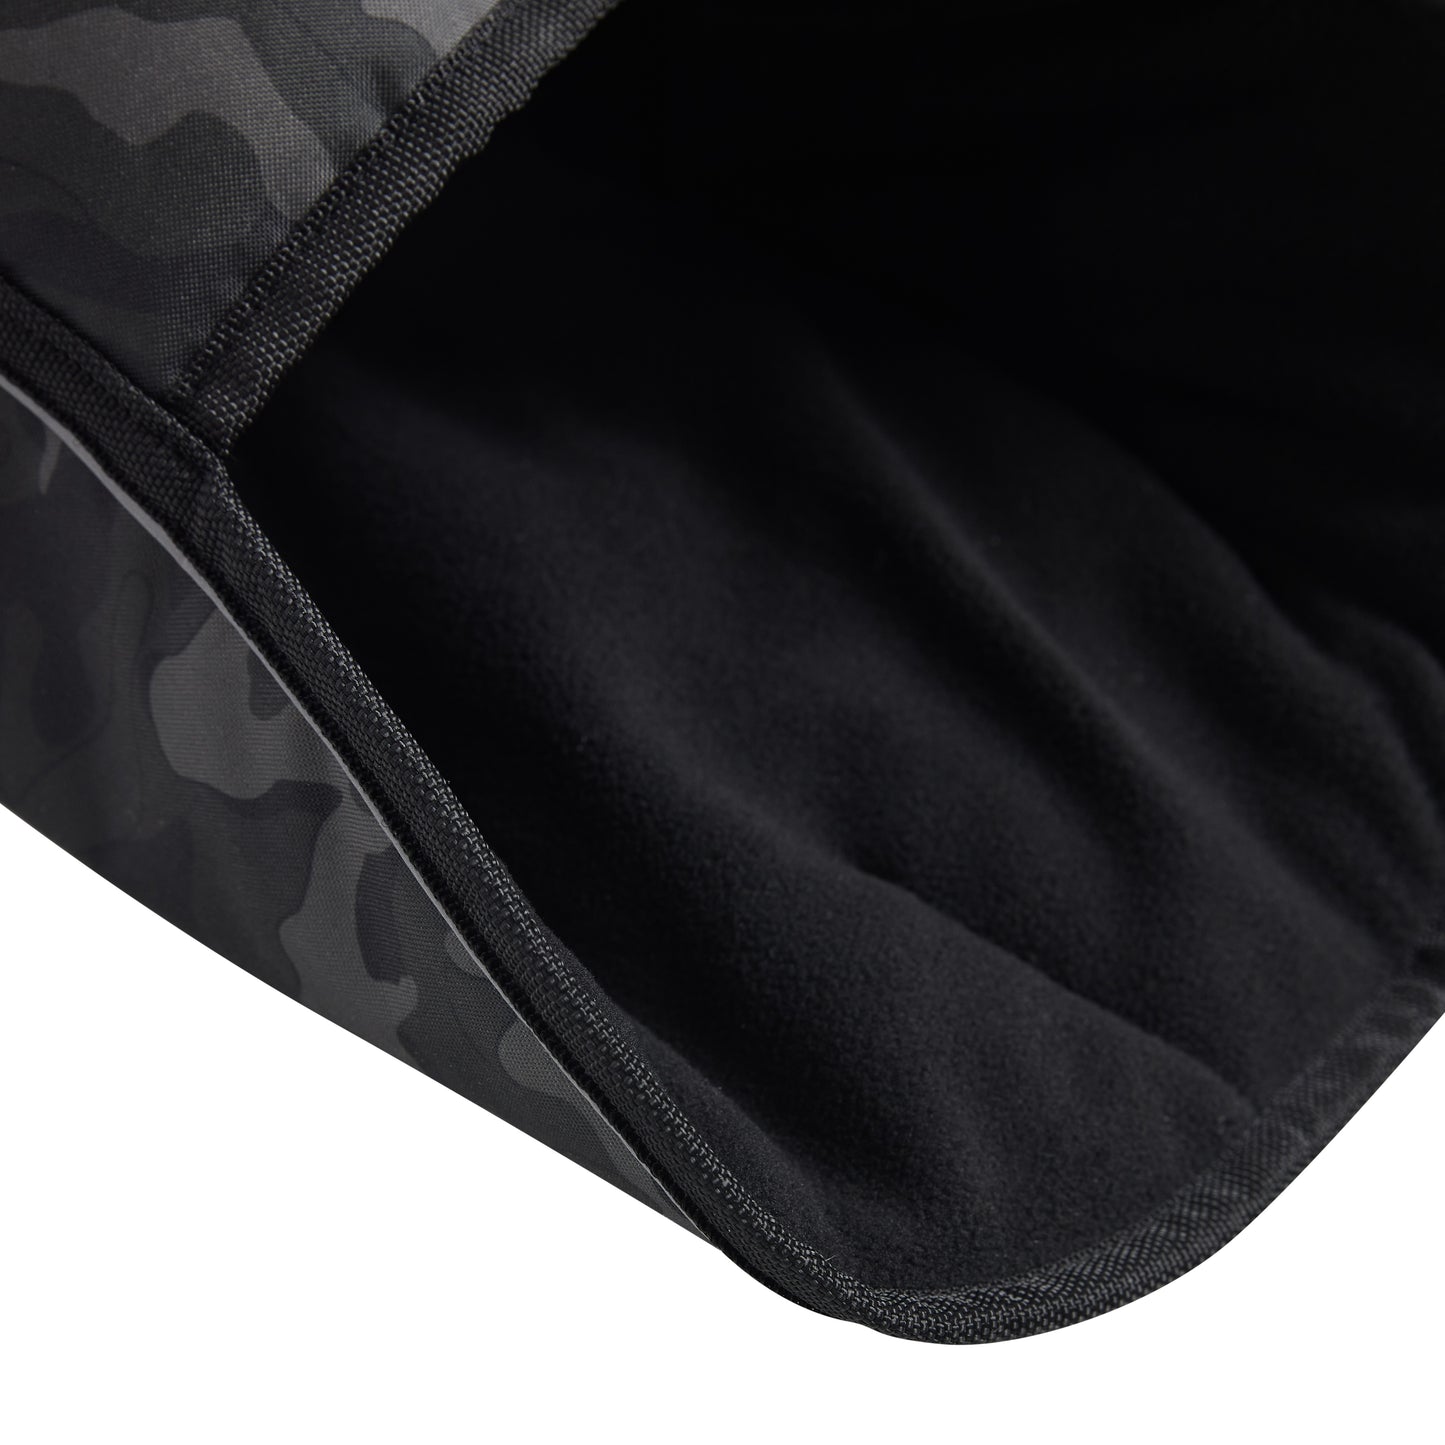 Blanket Jacket - Camo